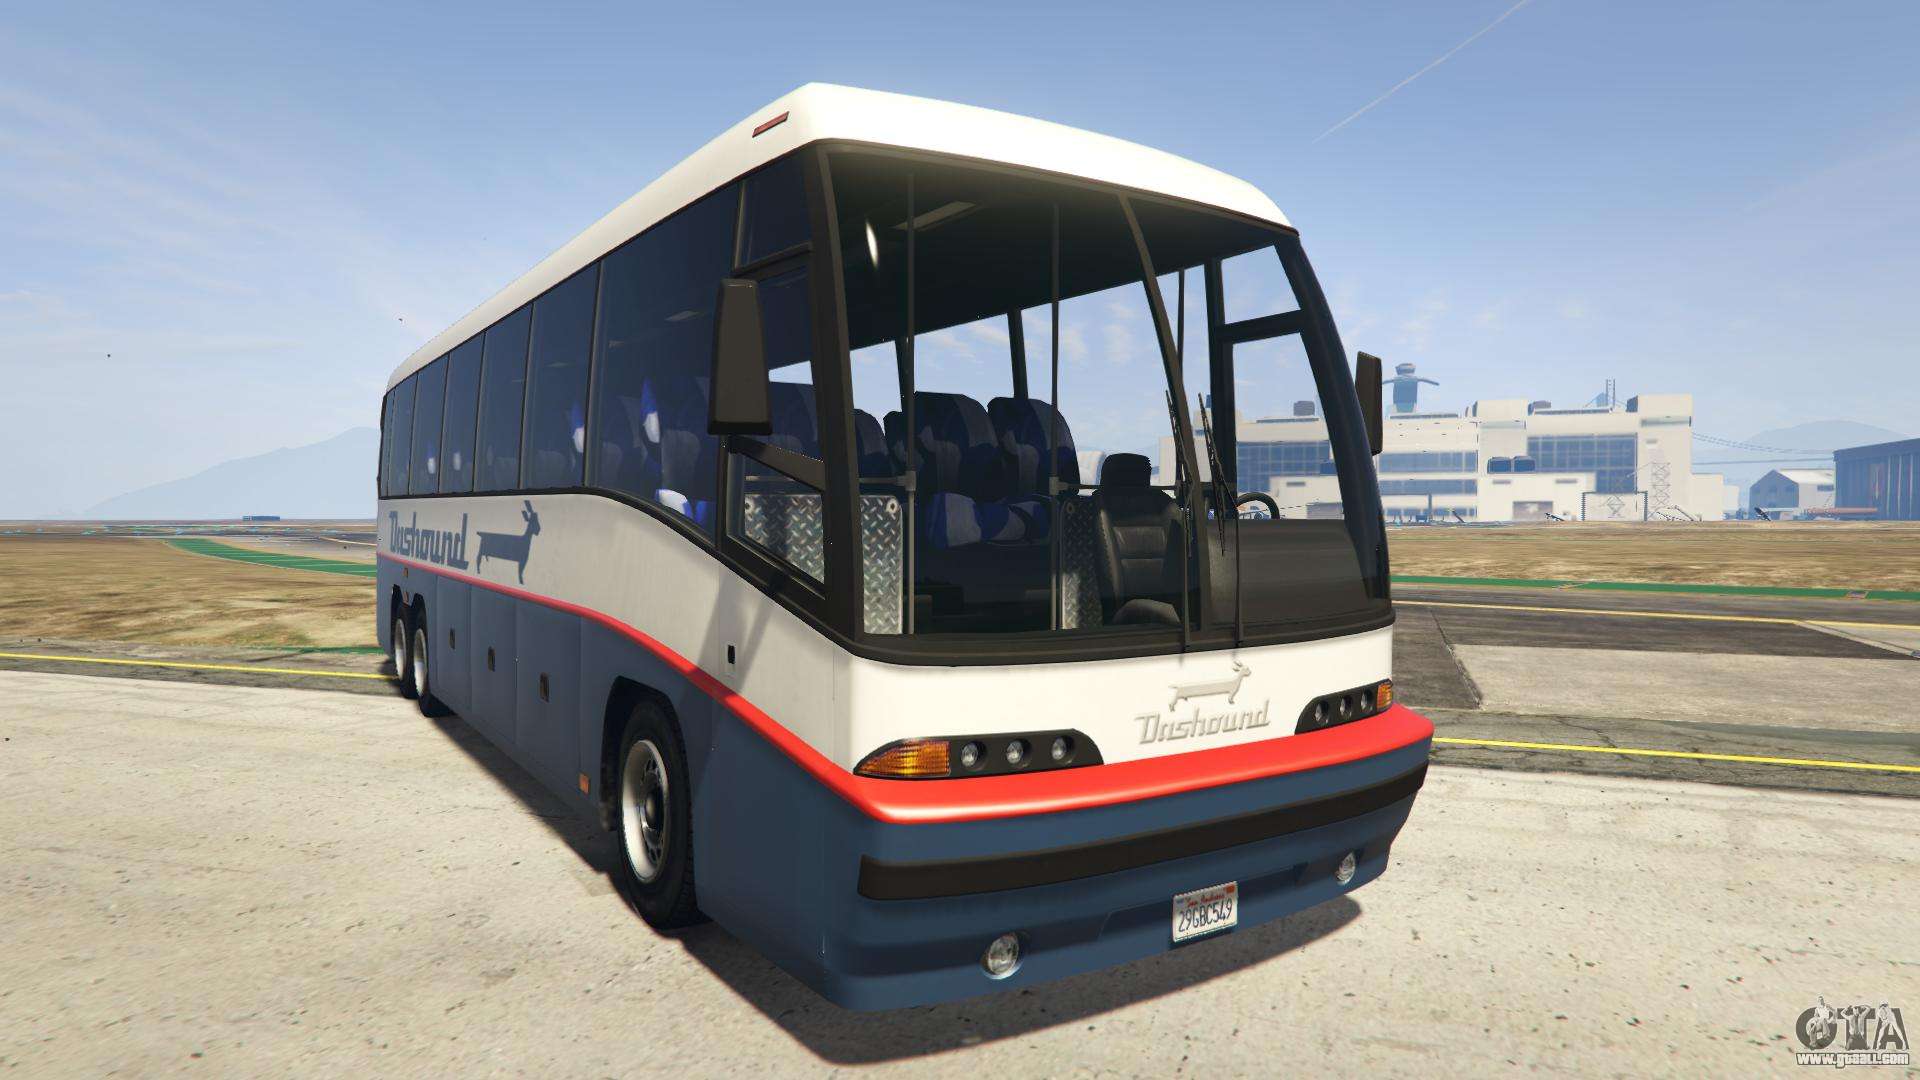 Gta 5 Airport Bus